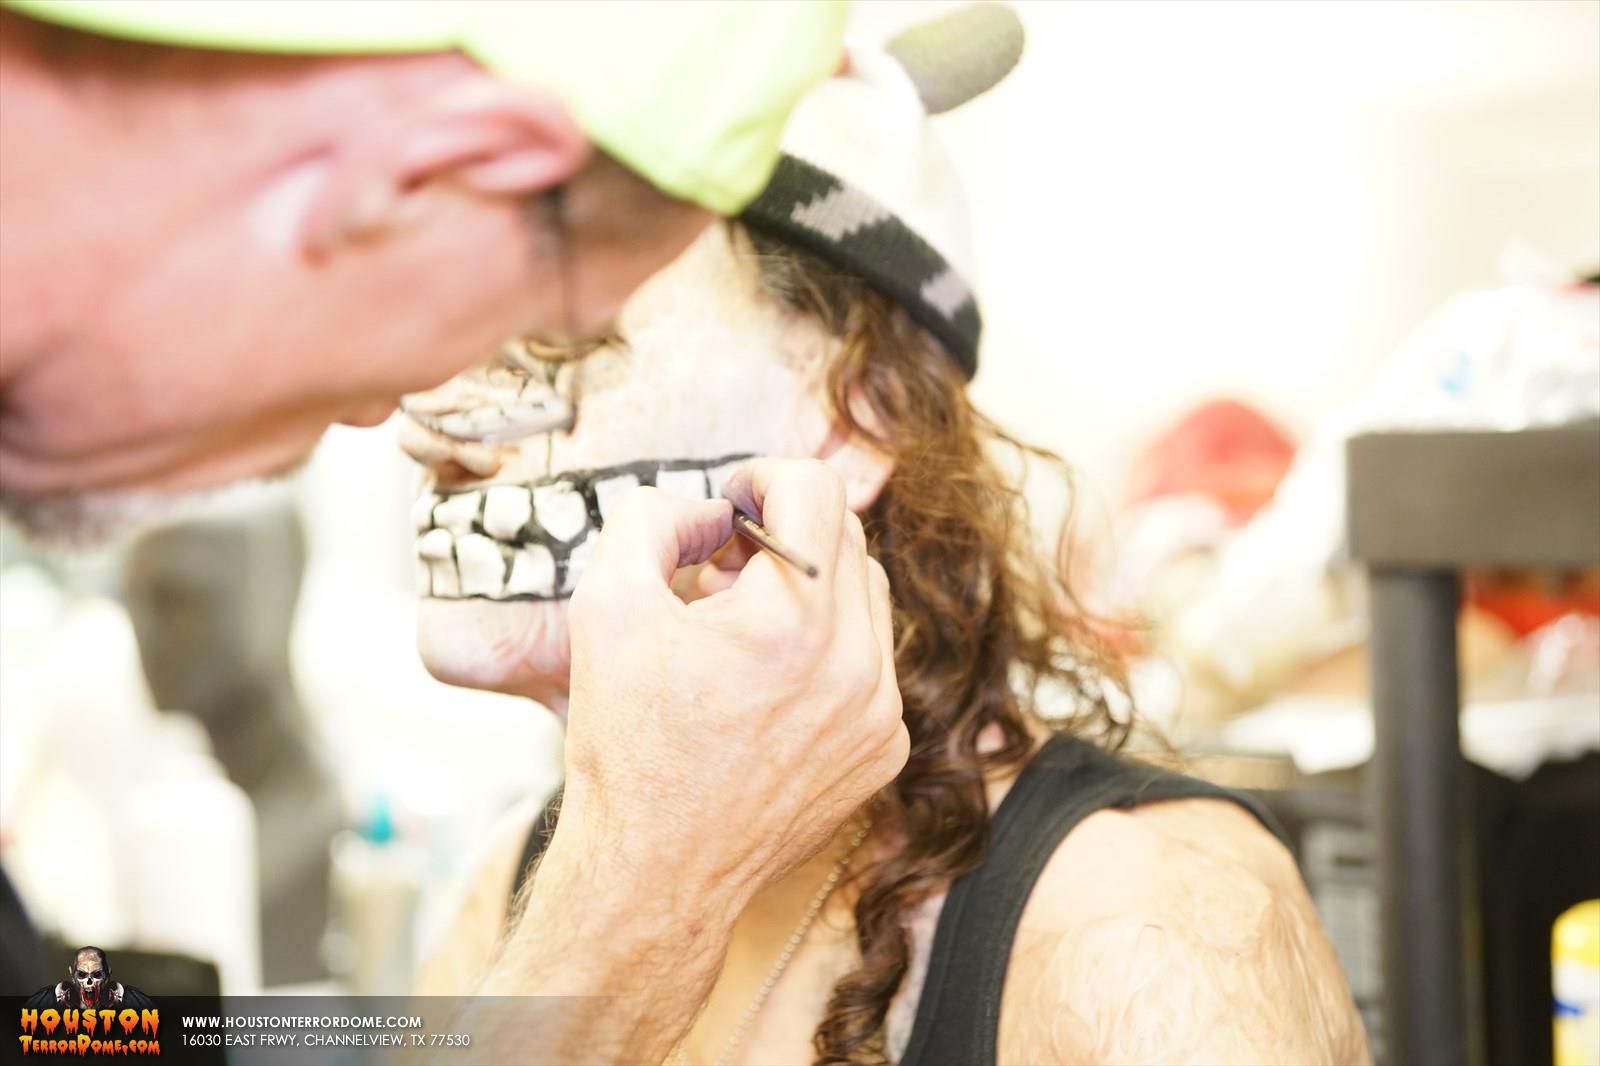 Makeup artist applying makeup to skull actor